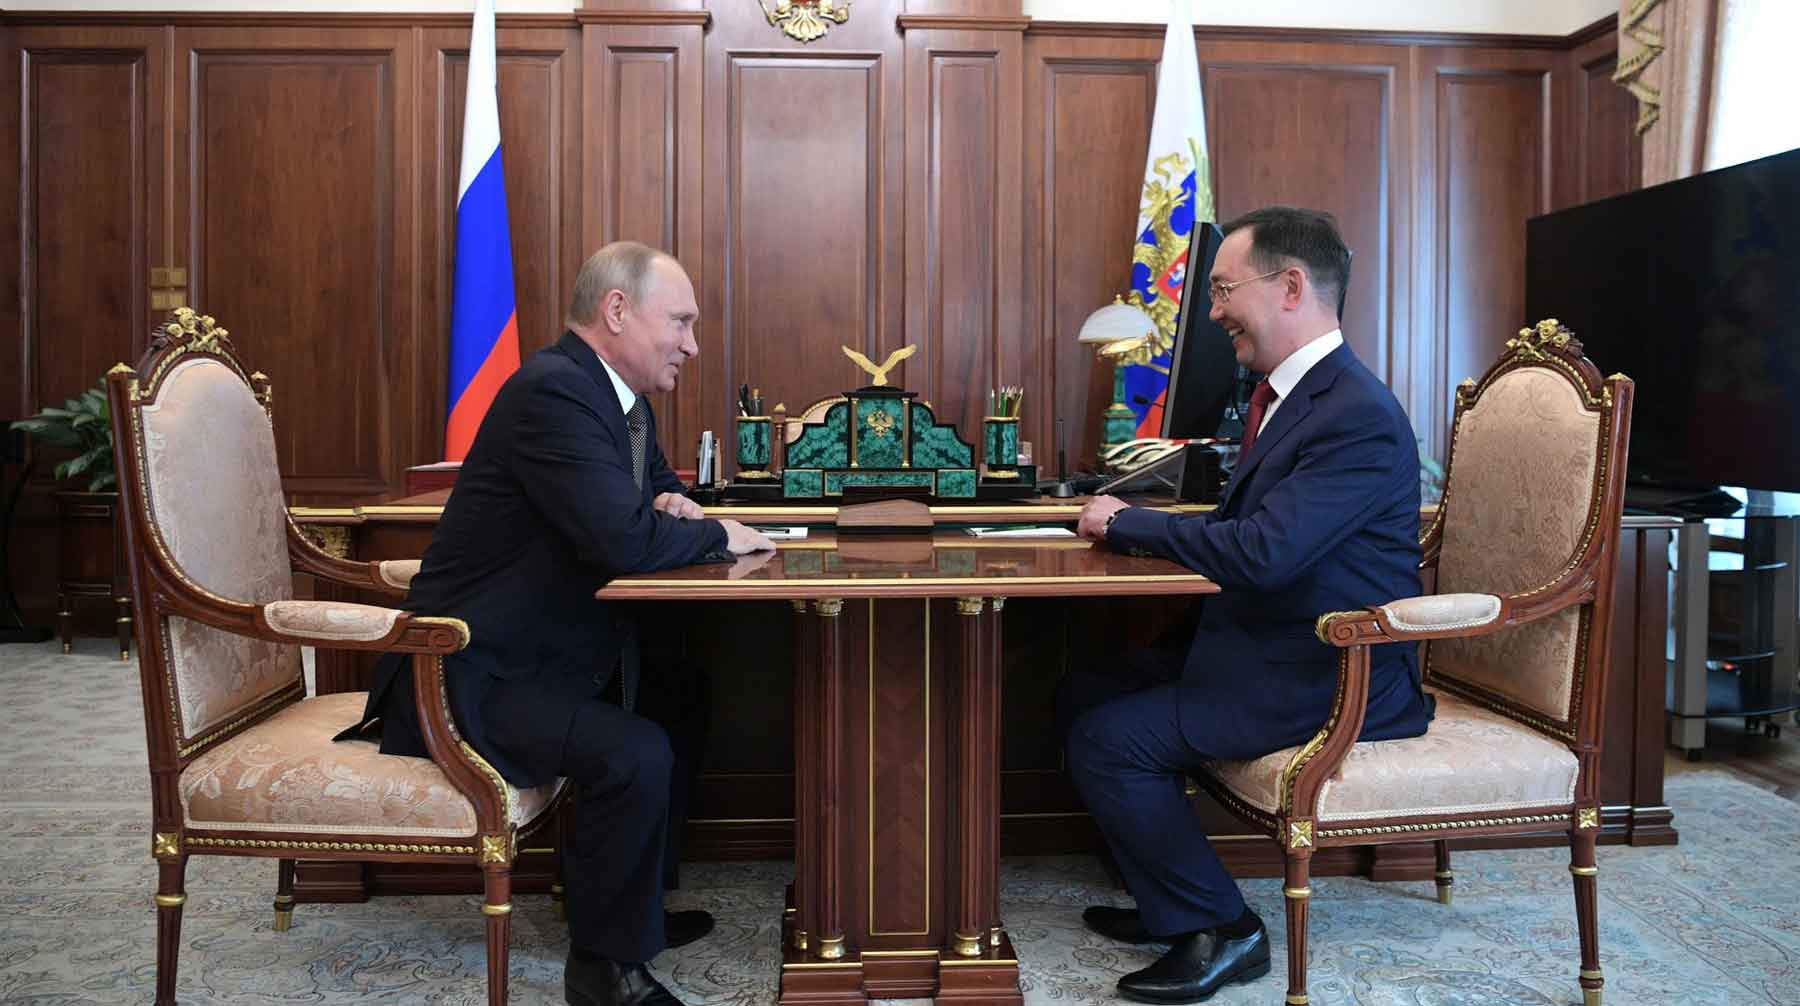 Глава Якутии Айсен Николаев обратил внимание президента на заявления, сделанные «с высоких трибун» Фото: © GLOBAL LOOK press